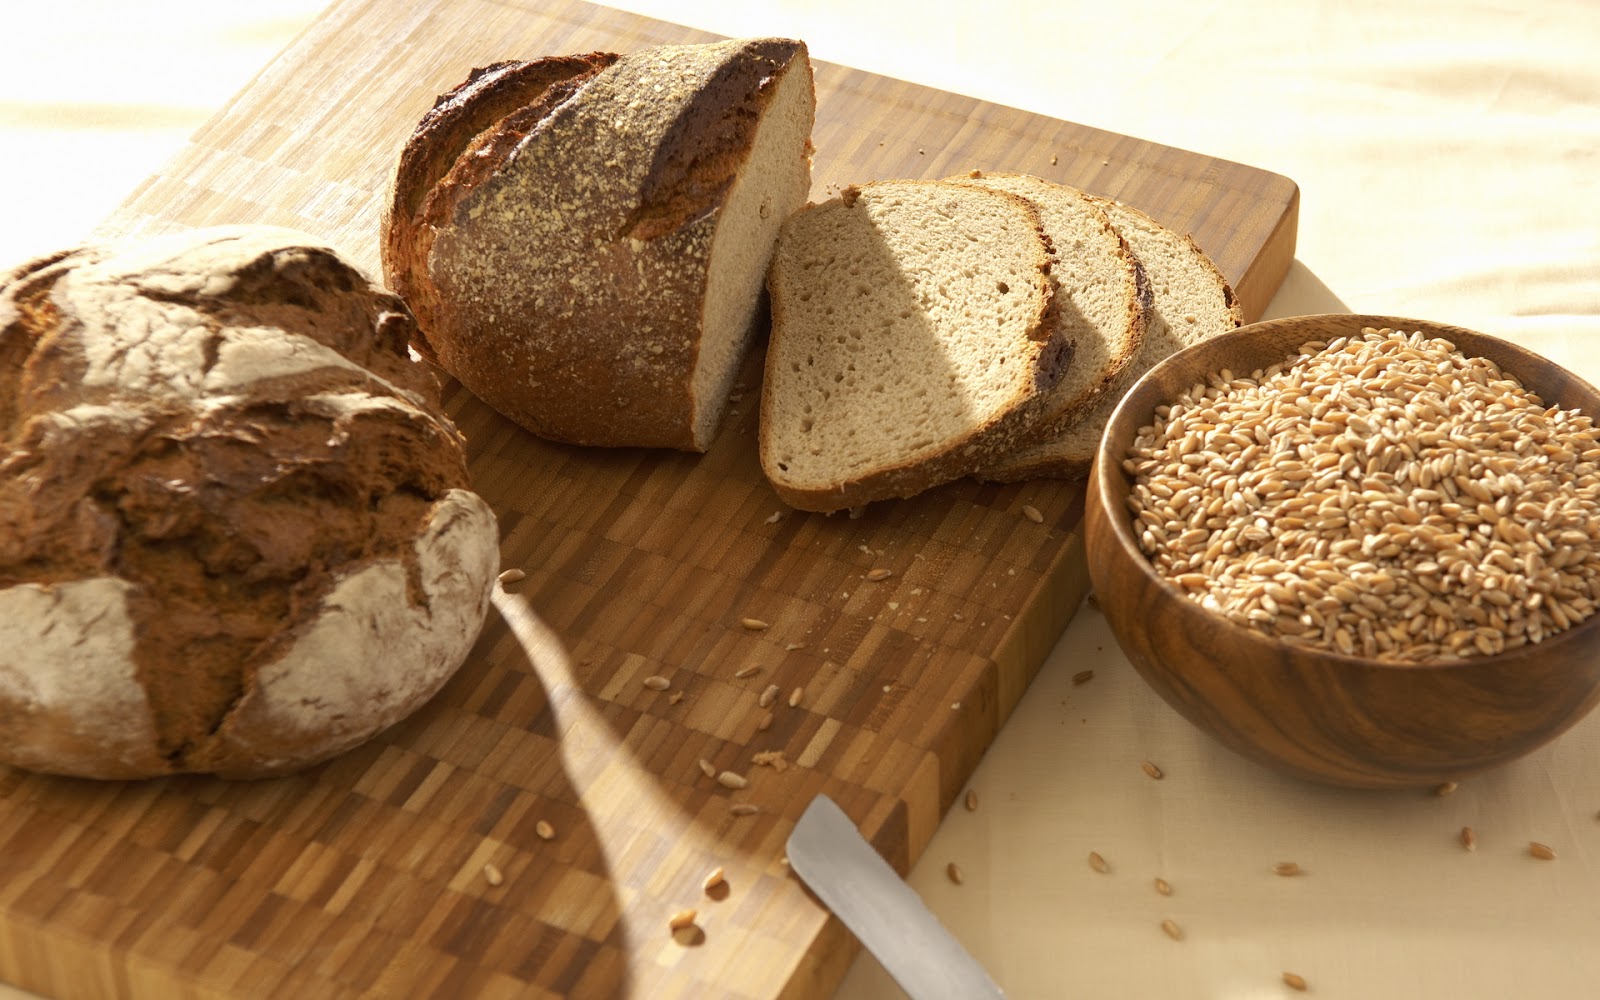 СА ЧИМЕ НАС ХРАНЕ? – Једемо сурогат хлеб, оно што вреди једе стока